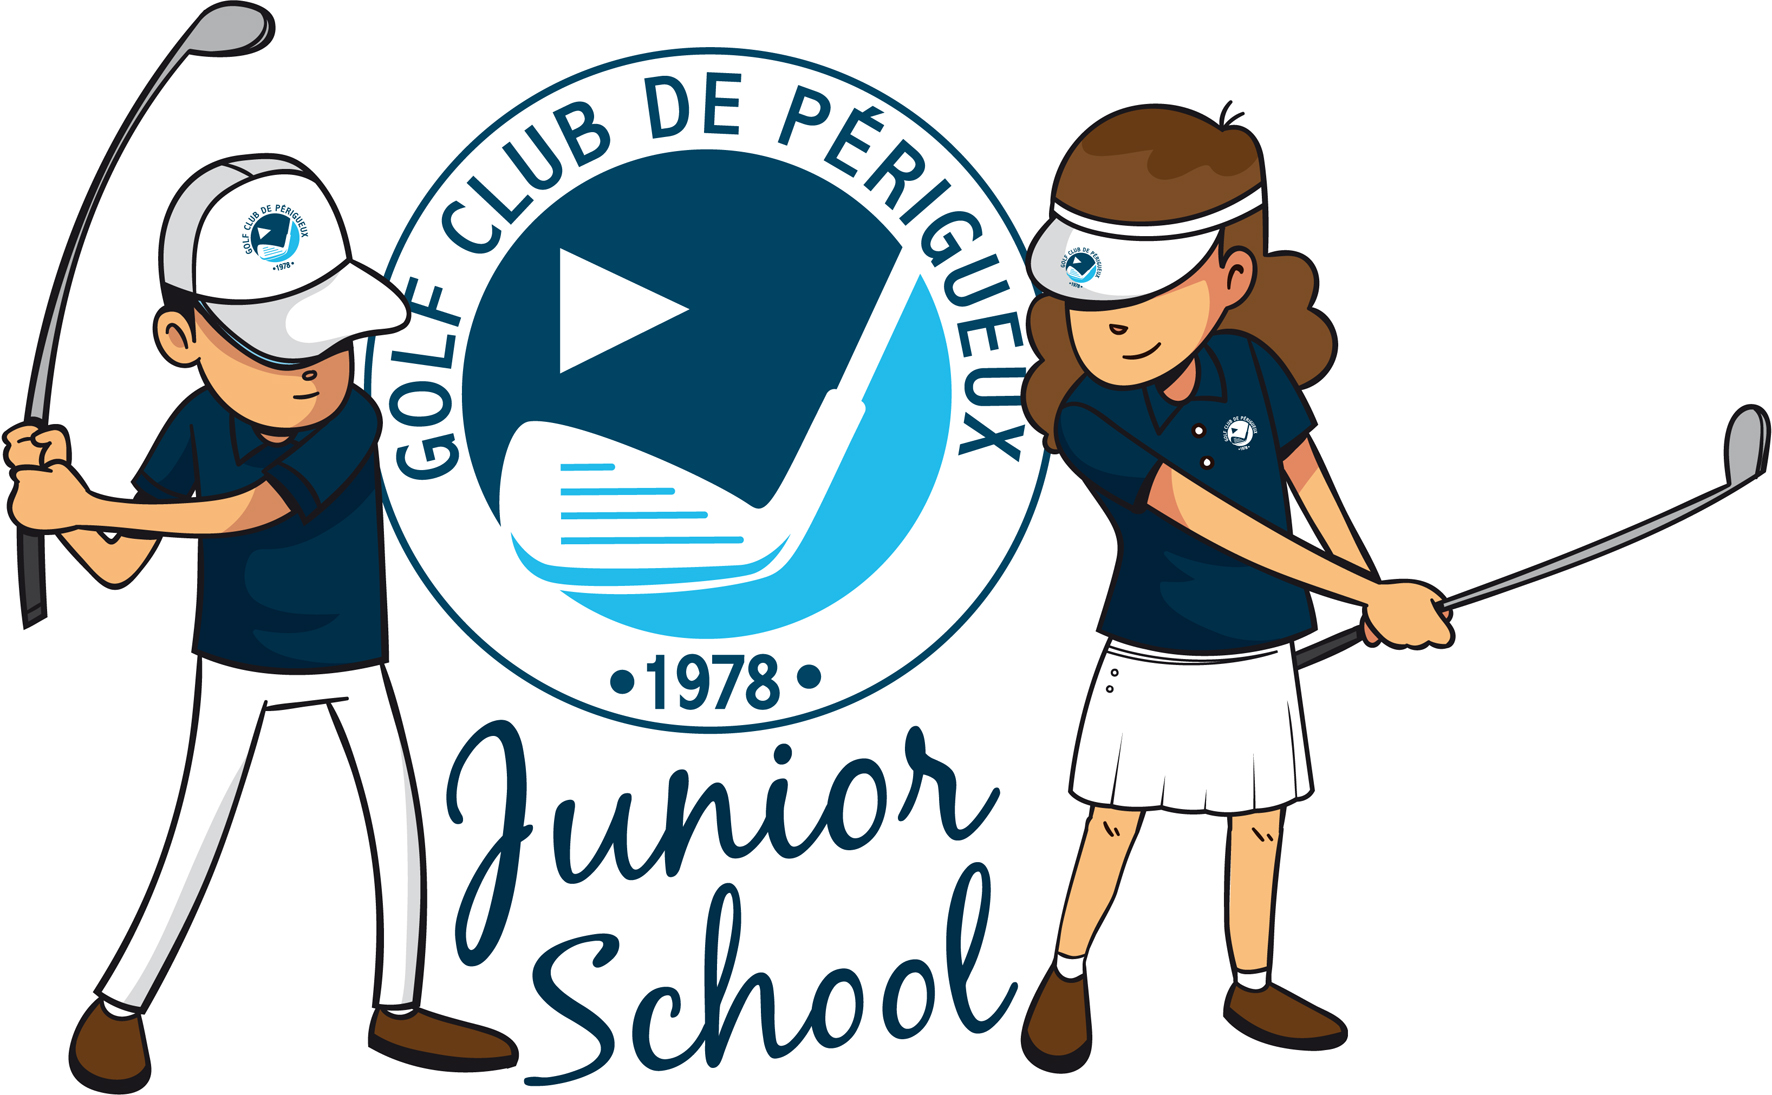 {Golf Club de Périgueux} Golf Club de Périgueux, actualités des compétitions du club